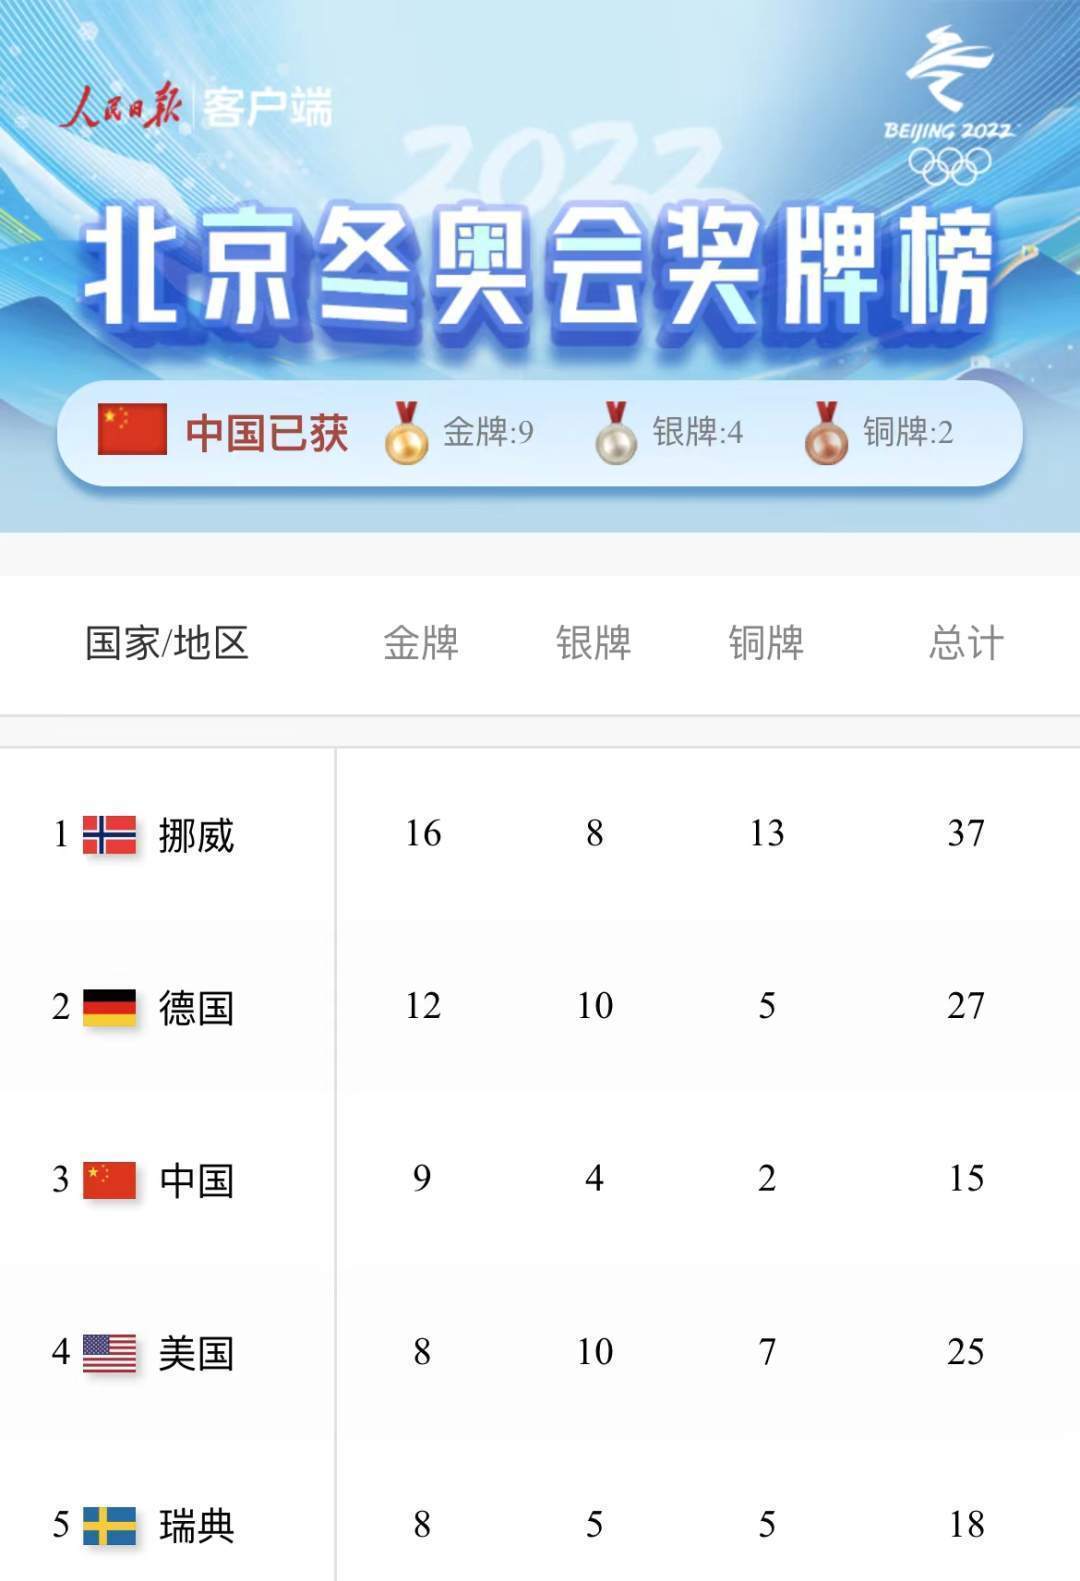 金牌|赛事收官！中国队9金4银2铜位列奖牌榜第三